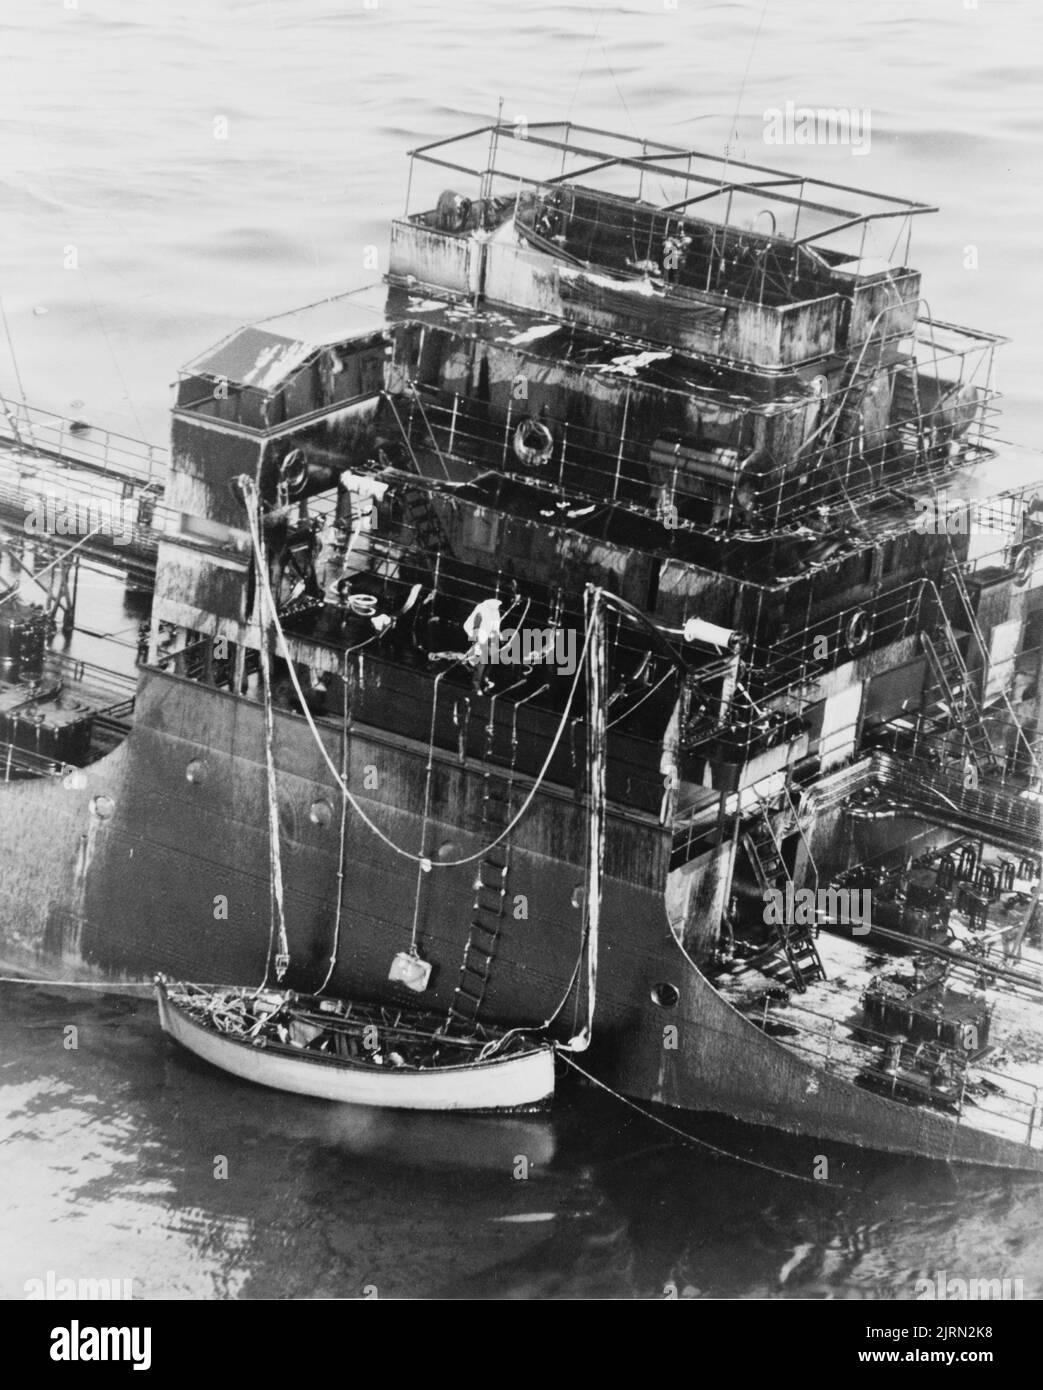 Une photo d'époque vers 1942 montrant un navire marchand s'enfoncant après avoir été torpillé par un sous-marin allemand tout en traversant l'océan Atlantique pendant la deuxième guerre mondiale. L'équipage a abaissé un bateau de survie et tente de quitter le navire Banque D'Images